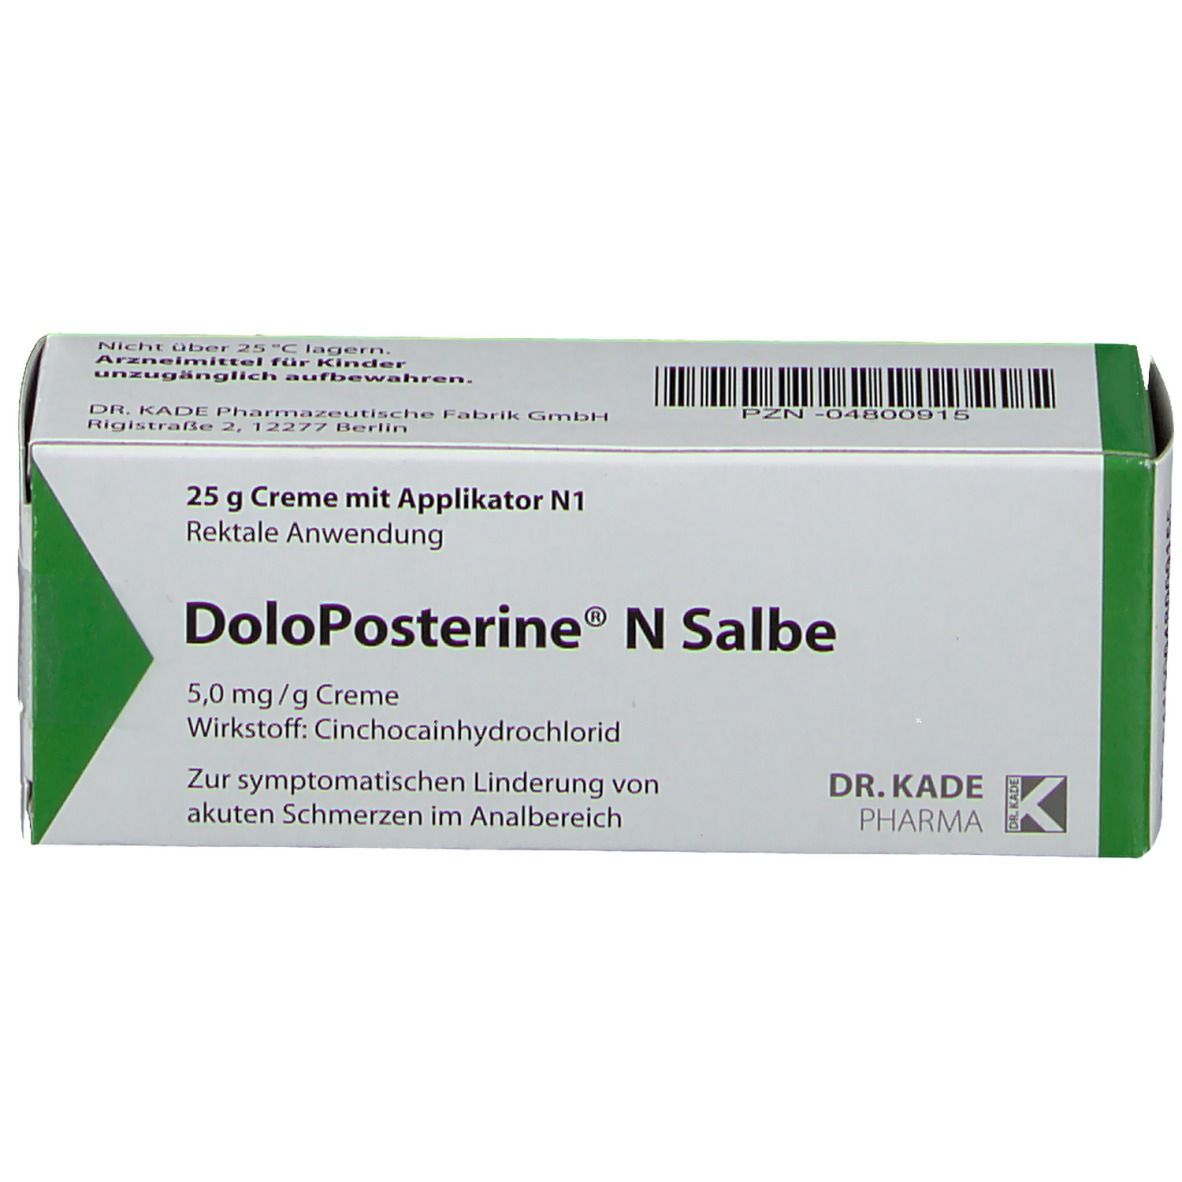 DoloPosterine® N Salbe